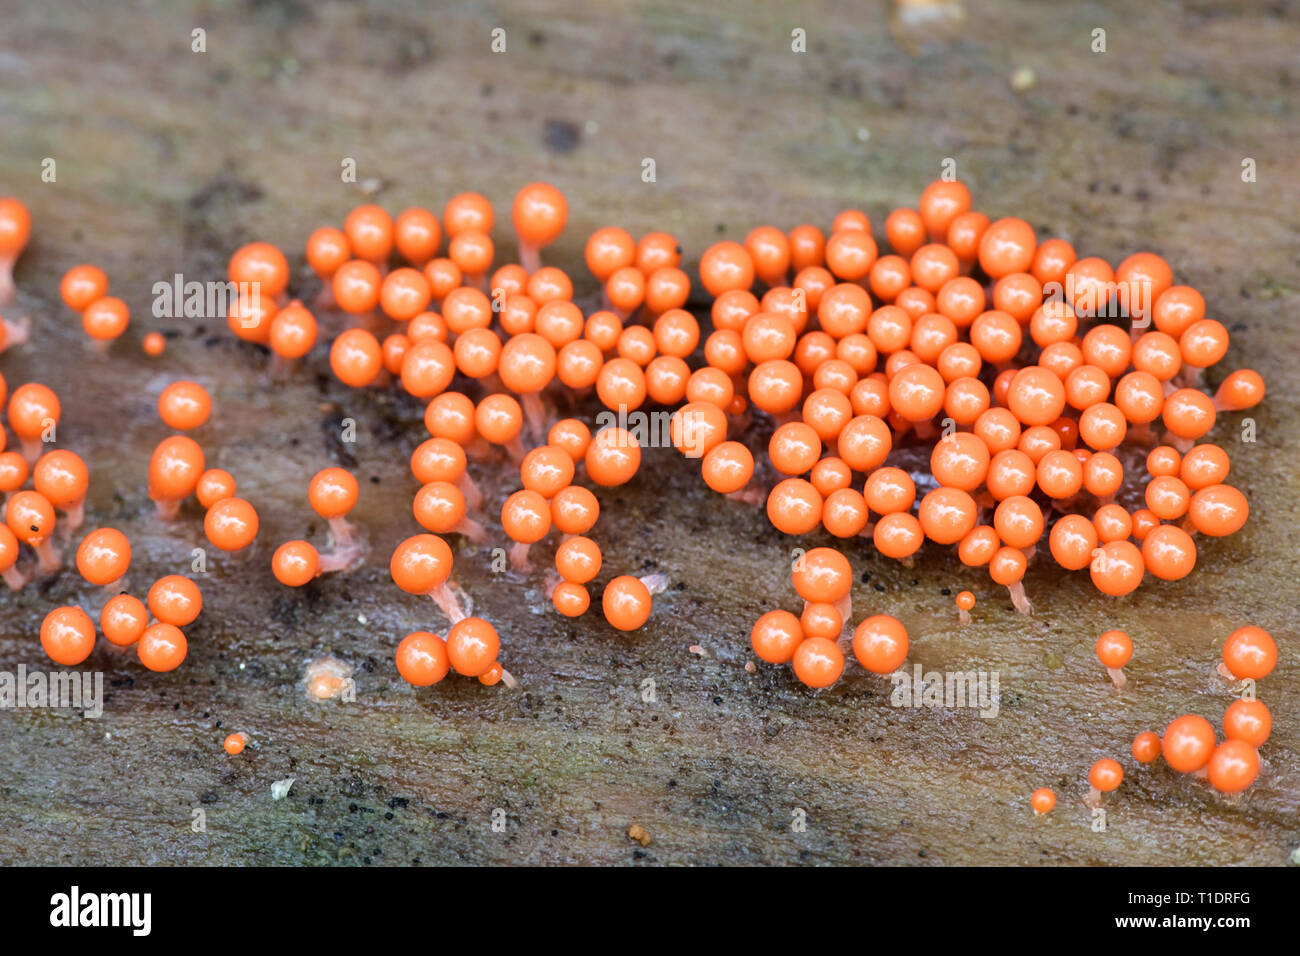 Orange slime mold or mould, Trichia decipiens Stock Photo